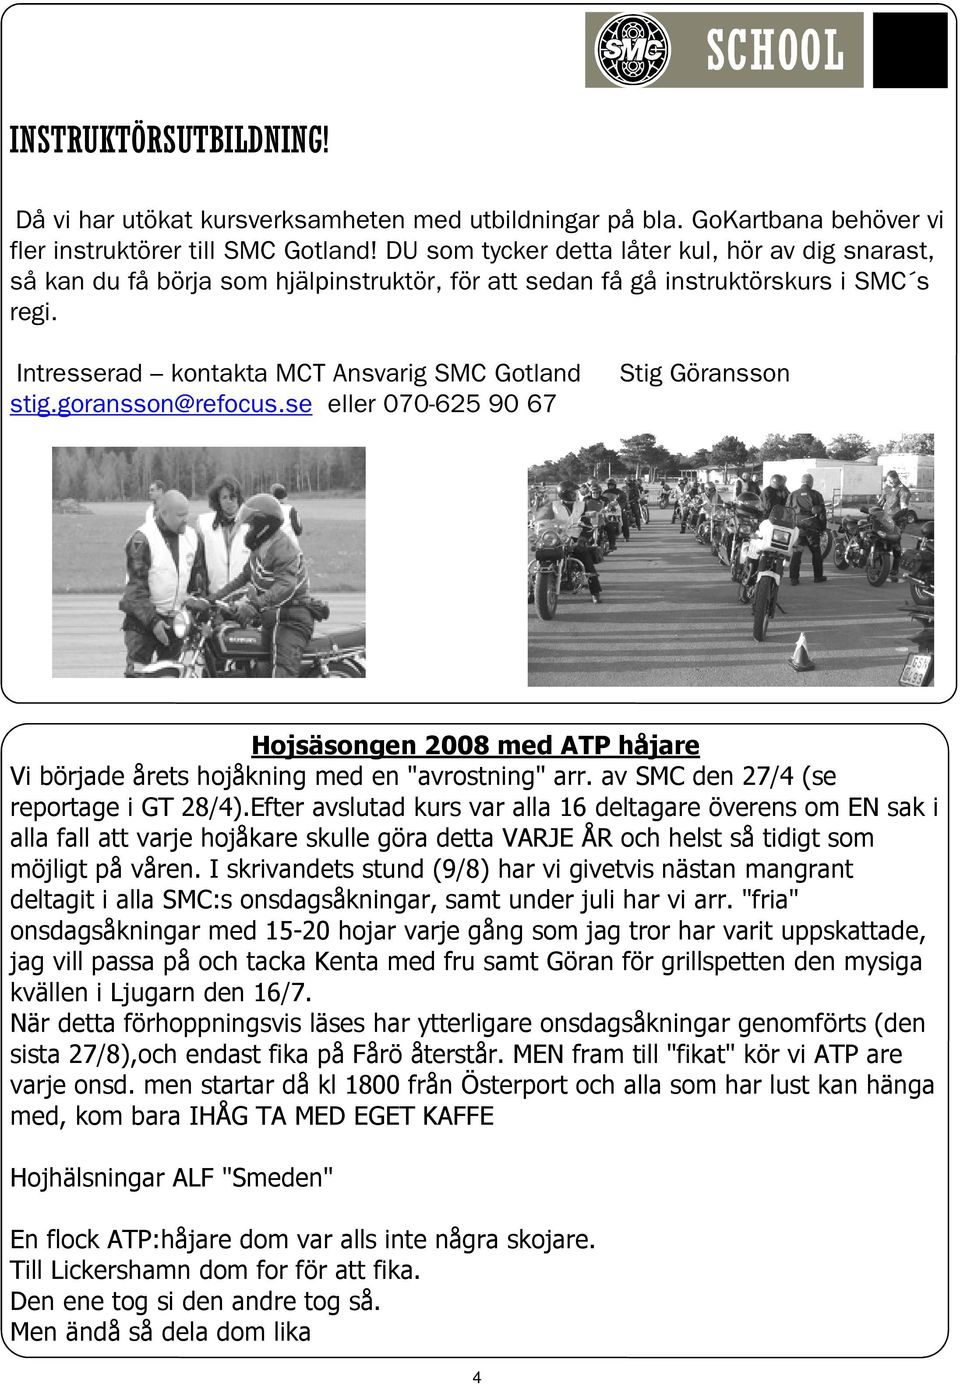 goransson@refocus.se eller 070-625 90 67 Stig Göransson Hojsäsongen 2008 med ATP håjare Vi började årets hojåkning med en "avrostning" arr. av SMC den 27/4 (se reportage i GT 28/4).